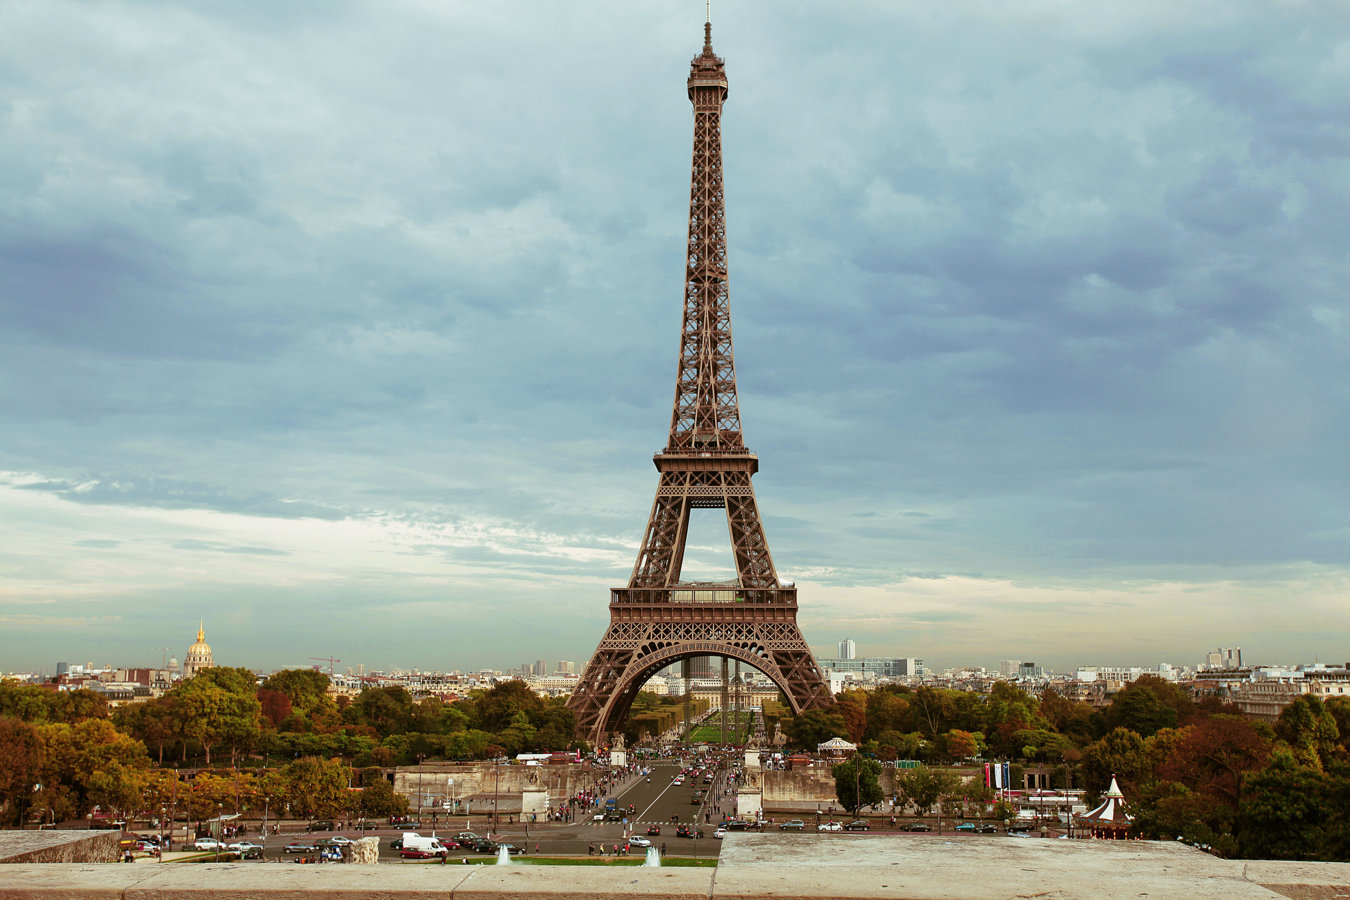 Eiffel tower.jpg